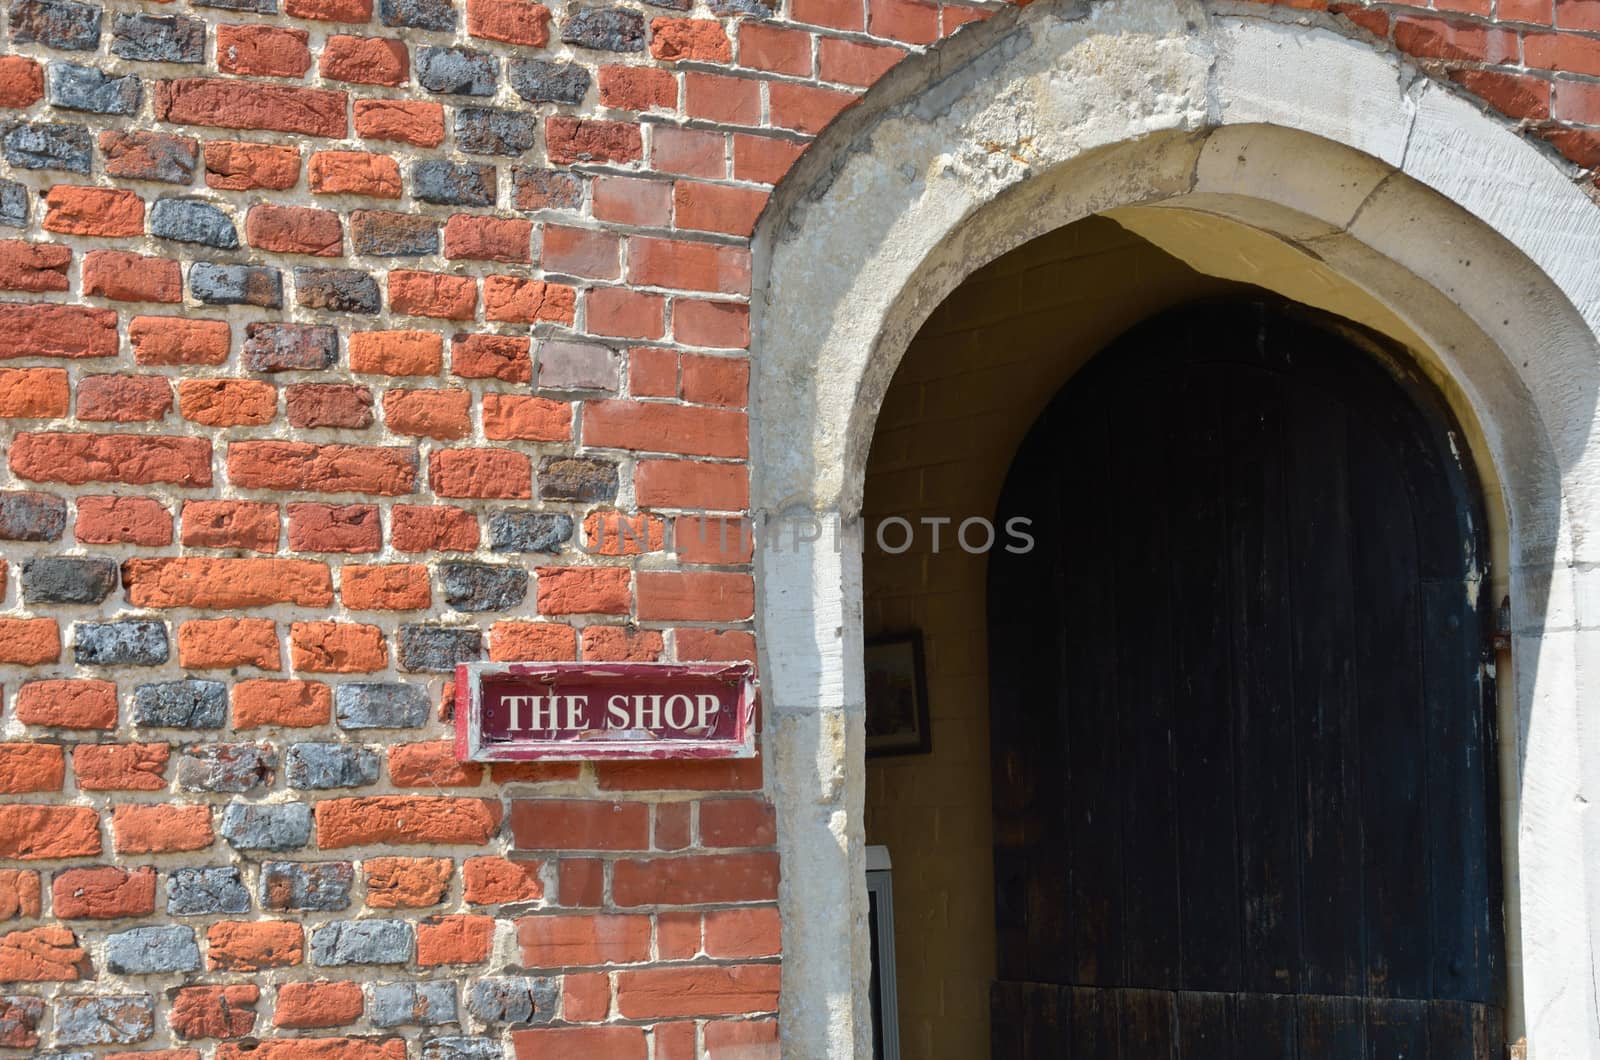 Old shop sign with brick door